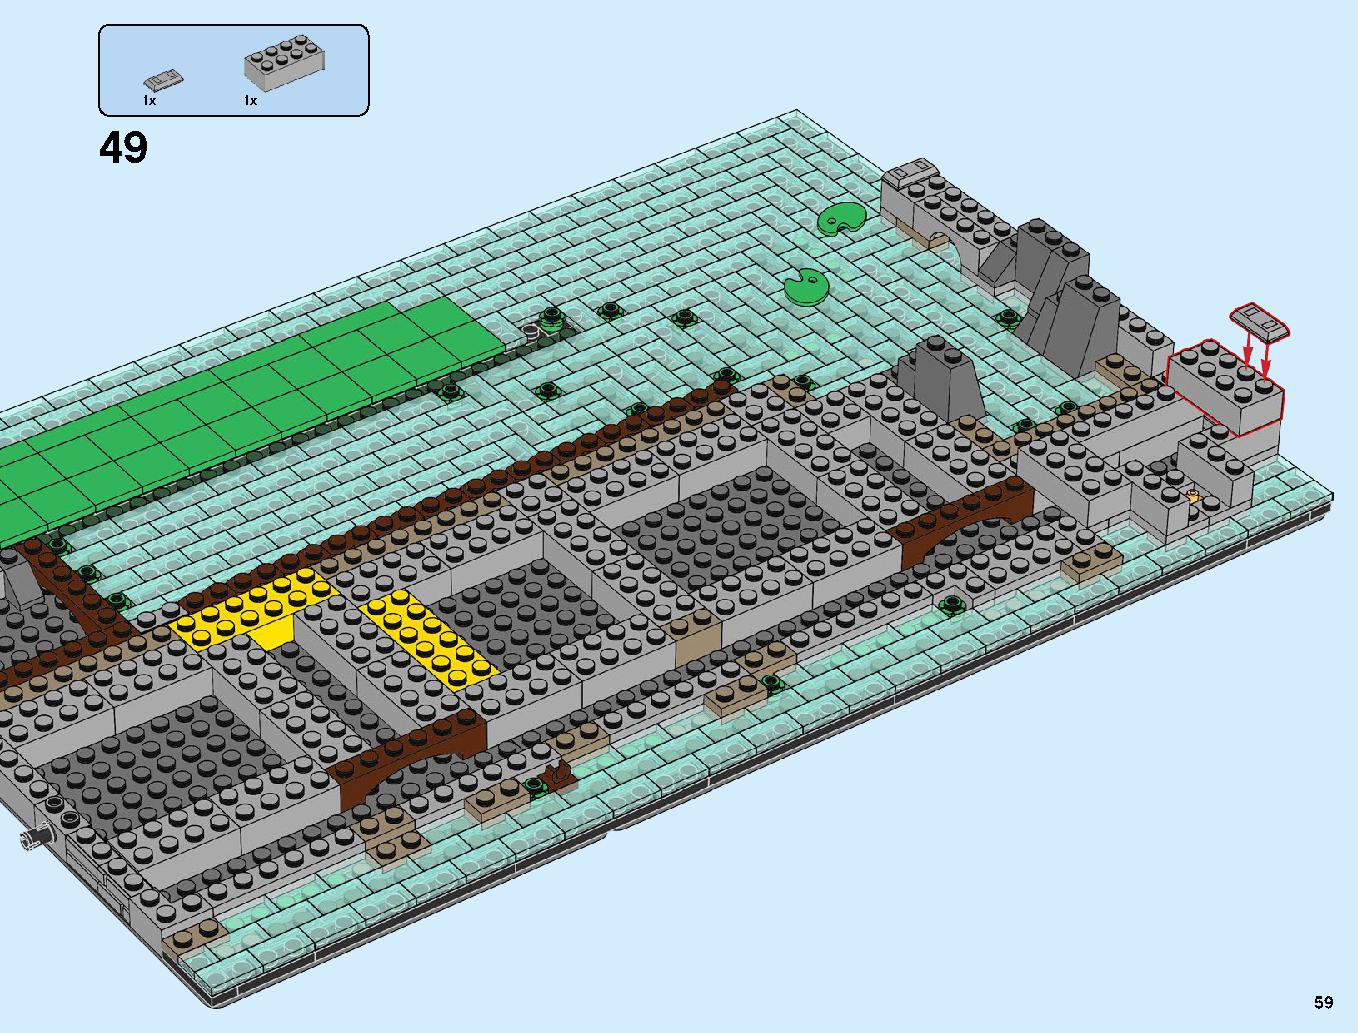 ニンジャゴーシティ・ポートパーク 70657 レゴの商品情報 レゴの説明書・組立方法 59 page